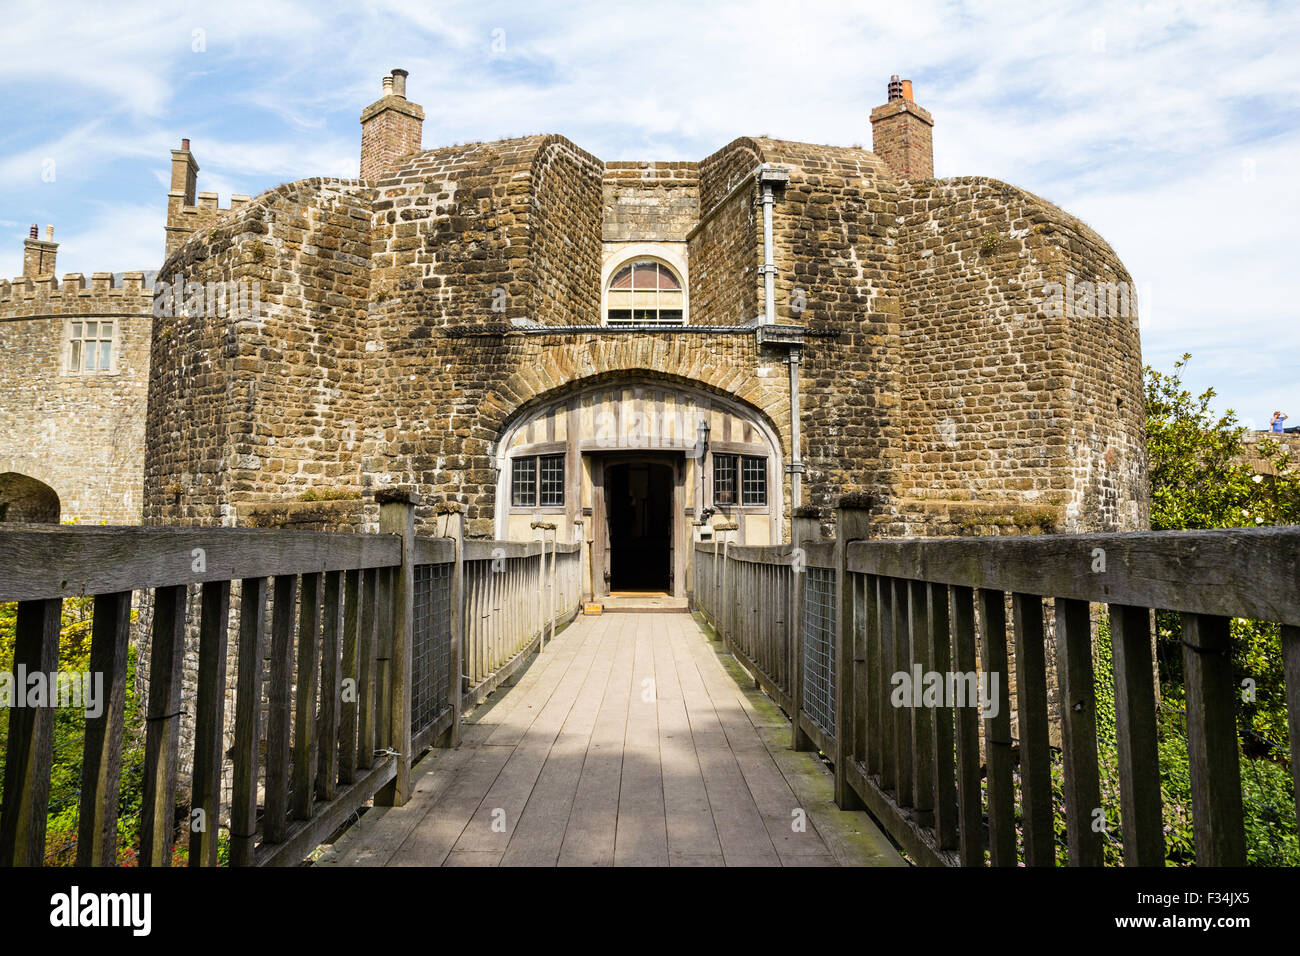 Tudor Walmer castillo construido en 1540 como una fortaleza de artillería moderna. La entrada trasera con puente de madera sobre el foso seco. Blanco y azul cielo nublado. Foto de stock